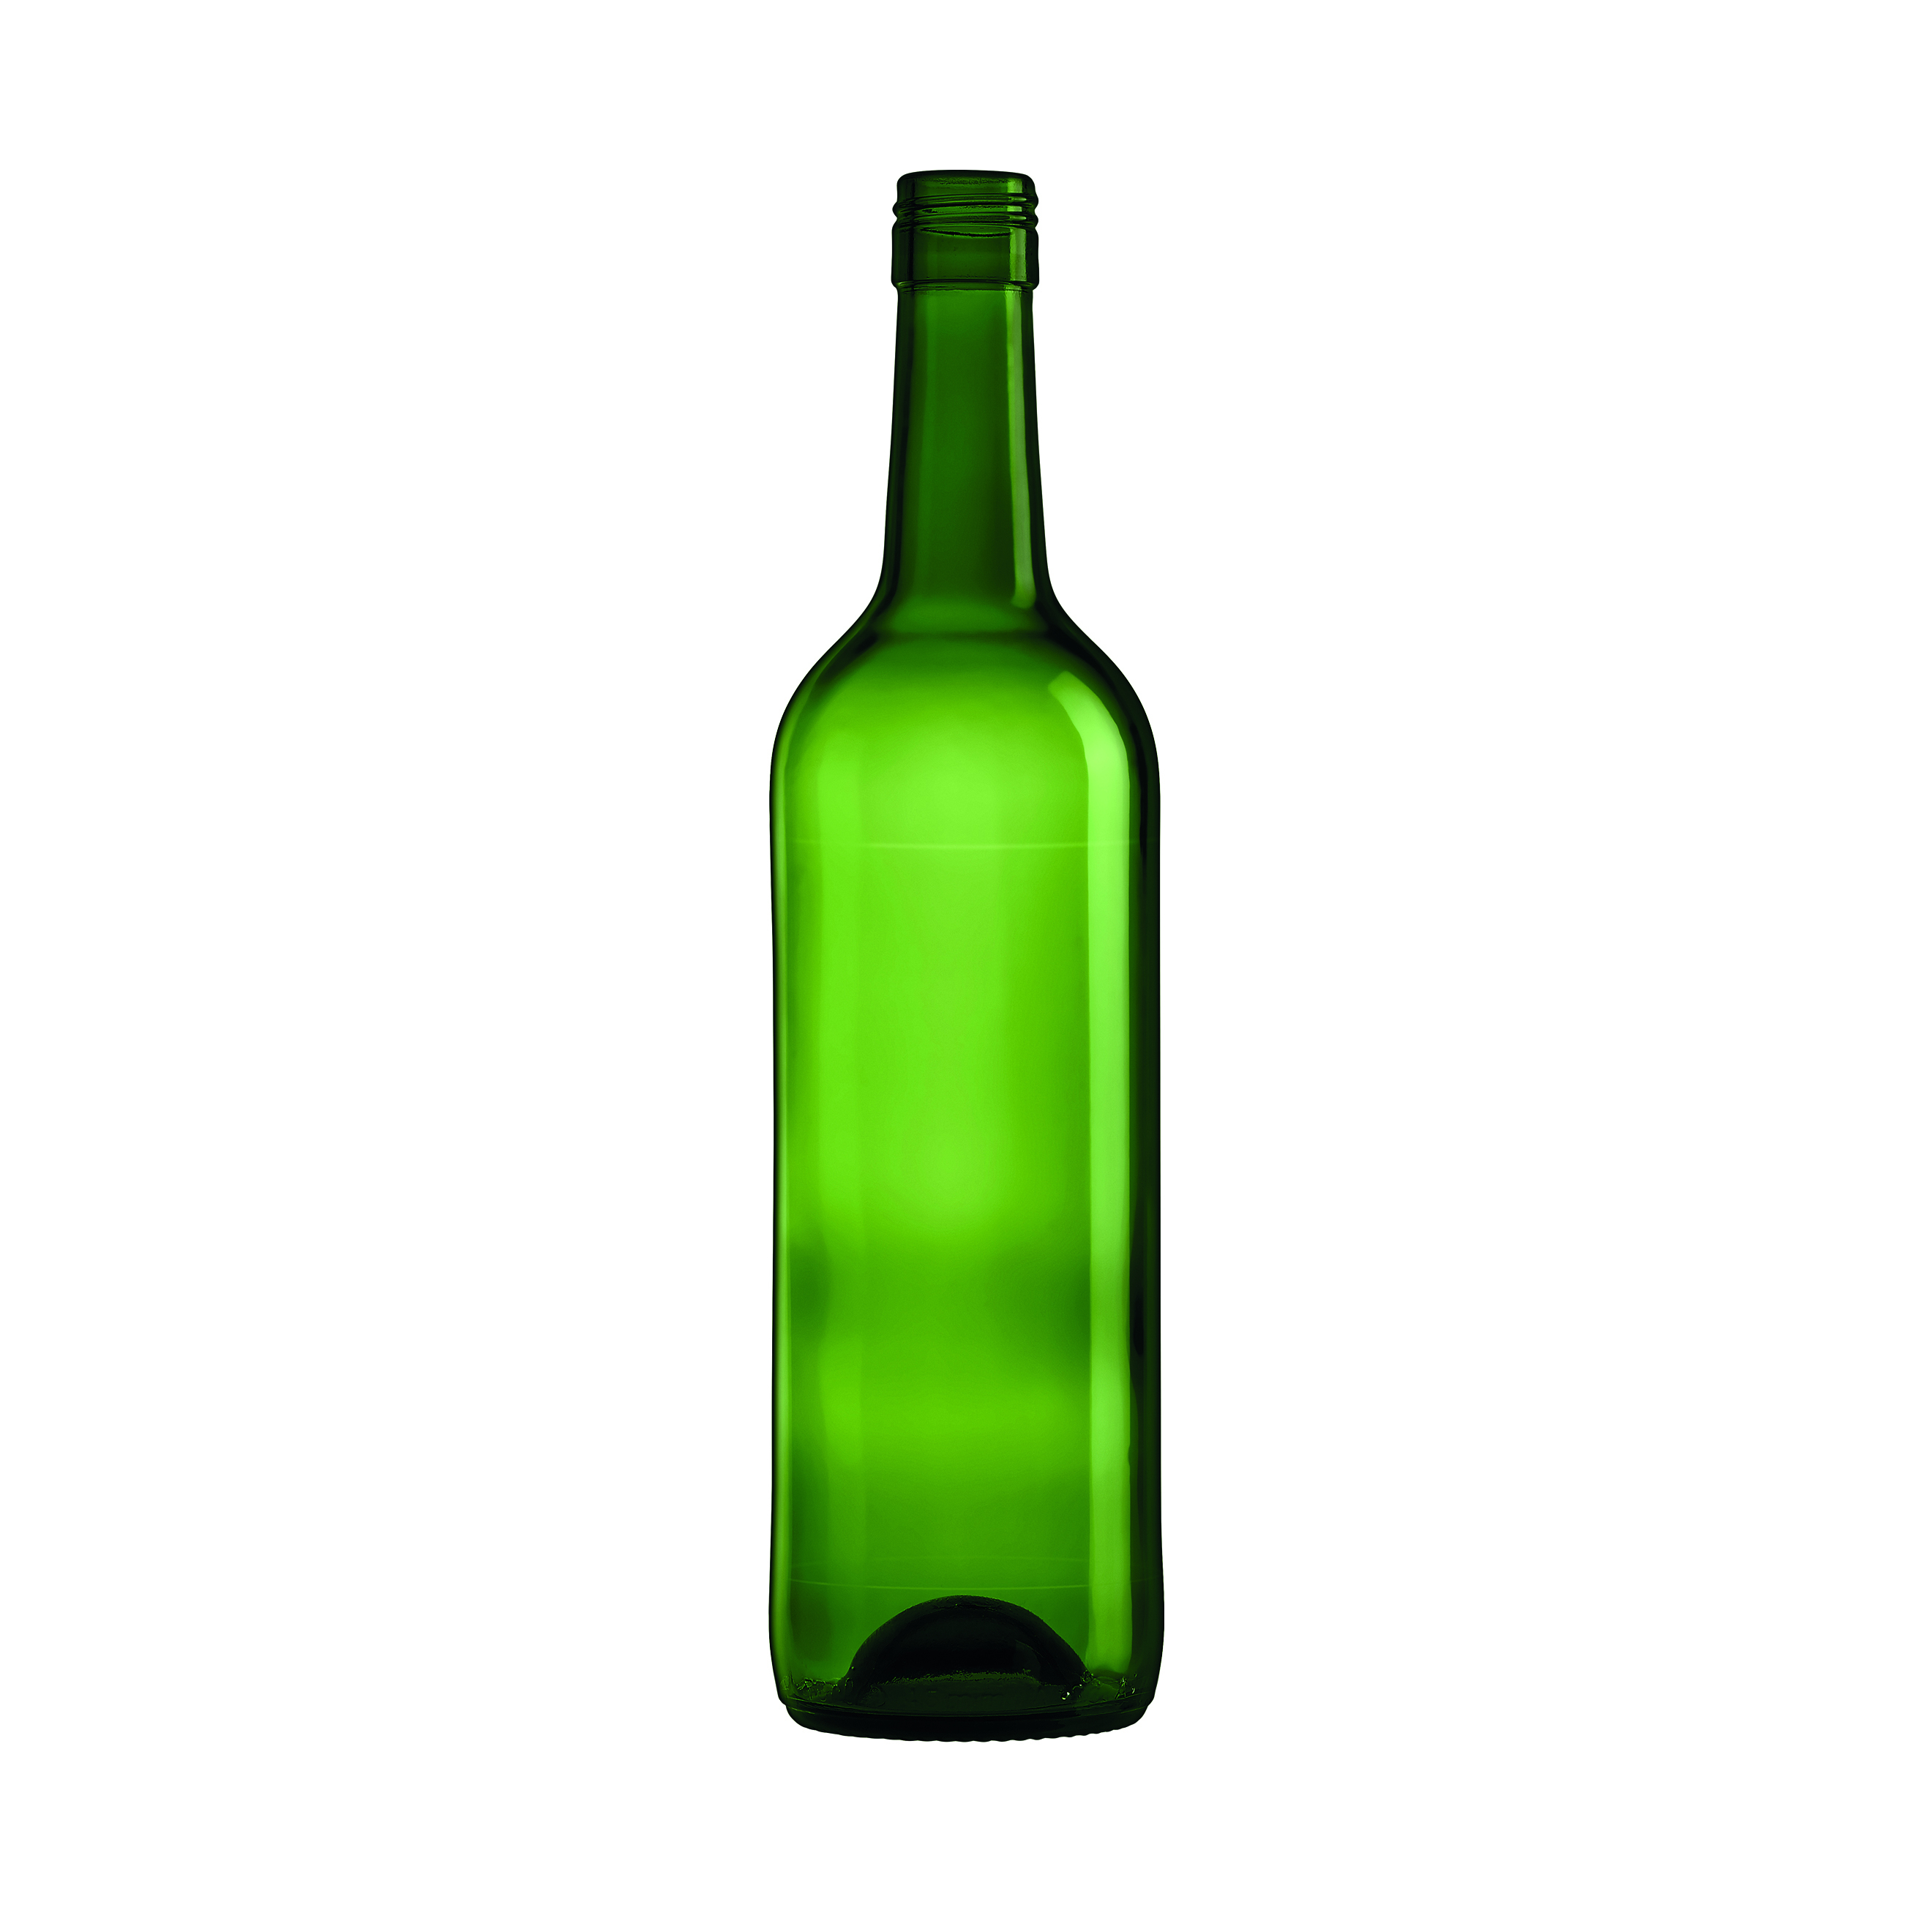 Пустая бутылка вина. Стеклобутылка PORTOPRE-750. Бутылка зеленая стеклянная. В бутылке зеленый. Бутылка вина.